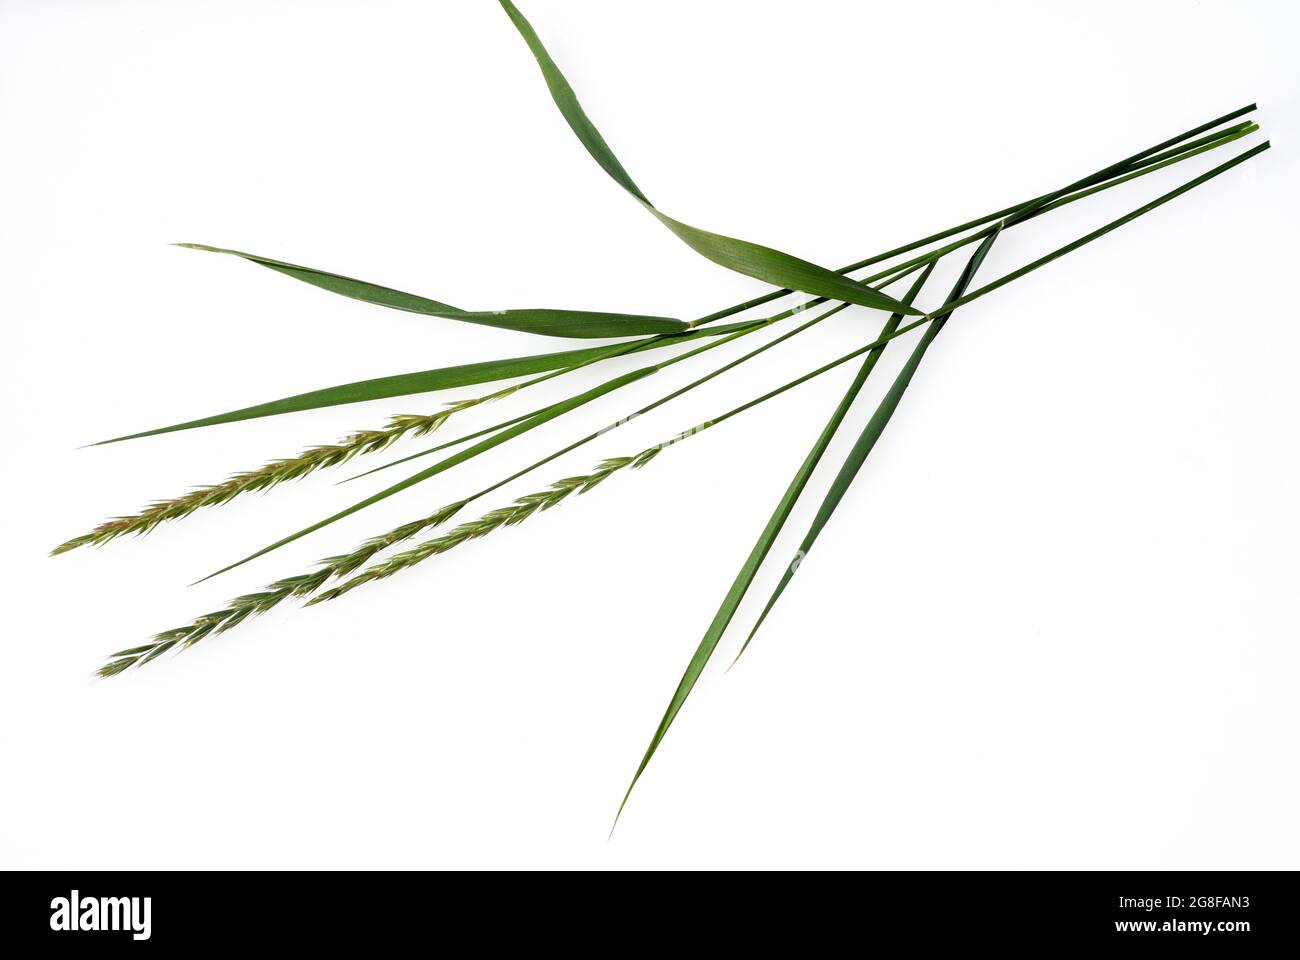 Quecke, Agropyron repens ist eine wichtige Heil- und Arzneipflanze. Quecke ist ein Gras und Unkraut. Couch, Agropyron repens, ist ein wichtiges Medikament Stockfoto